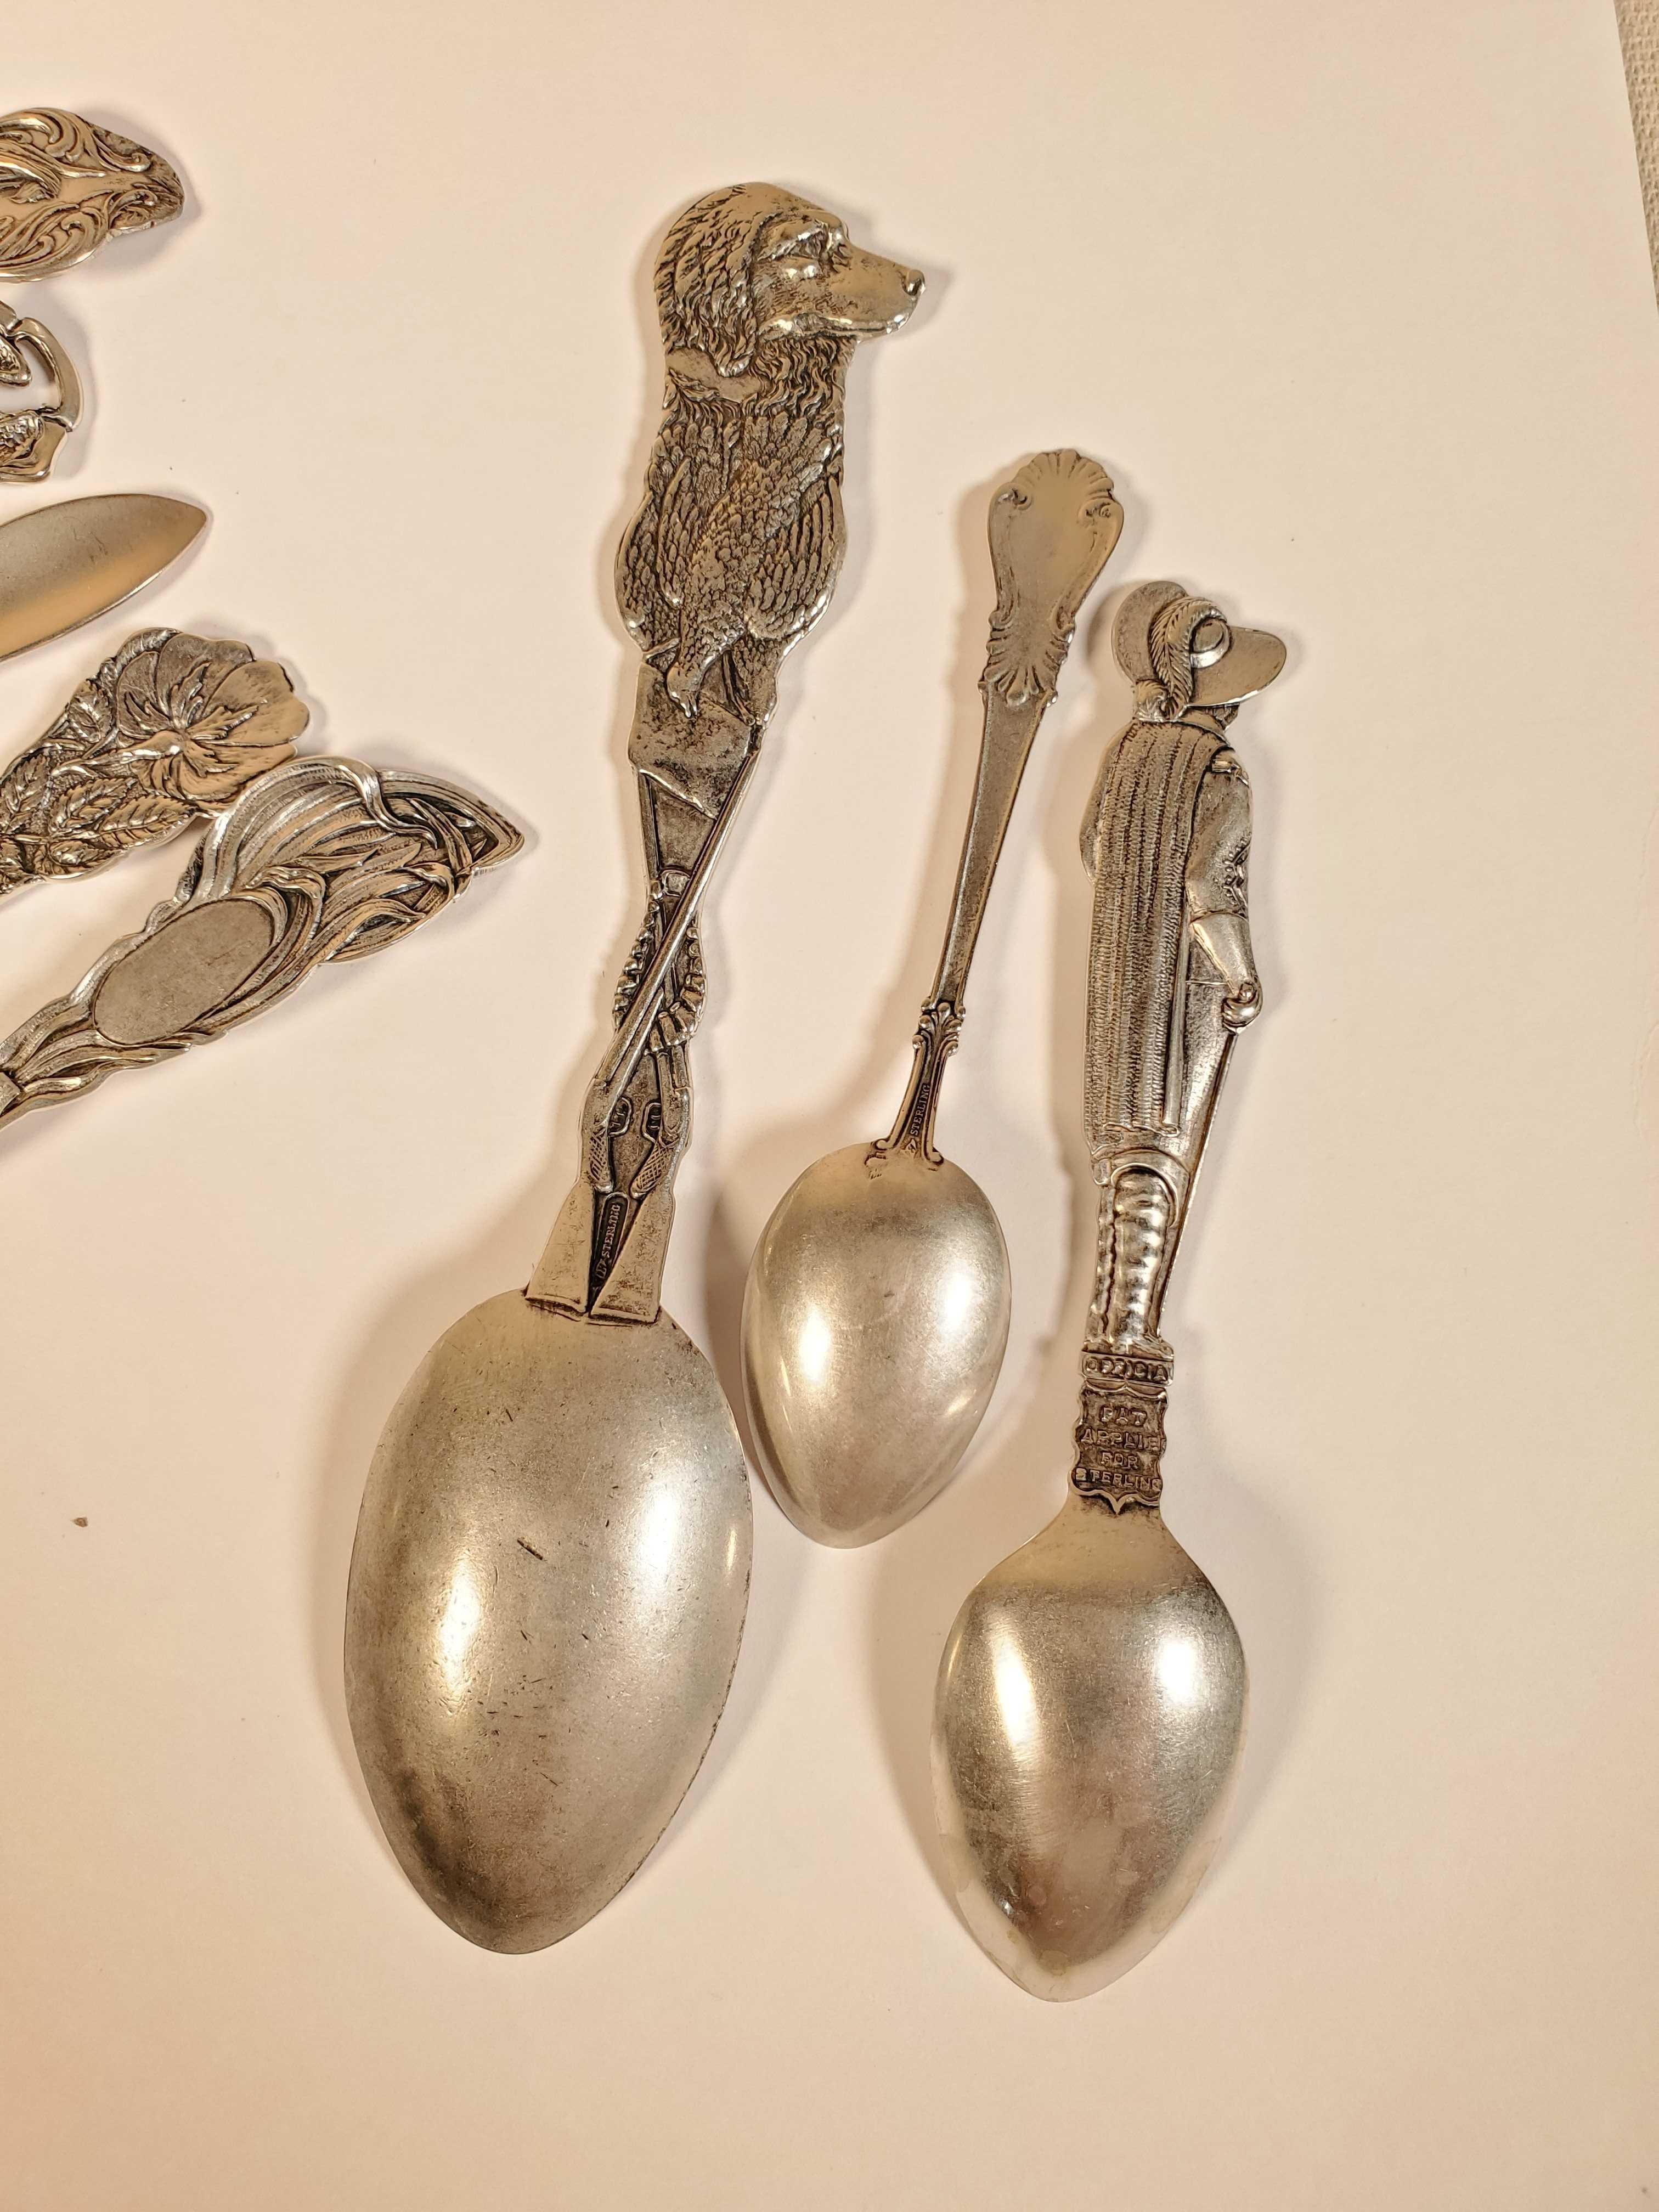 13 Antique Sterling Silver Souvenir Spoons